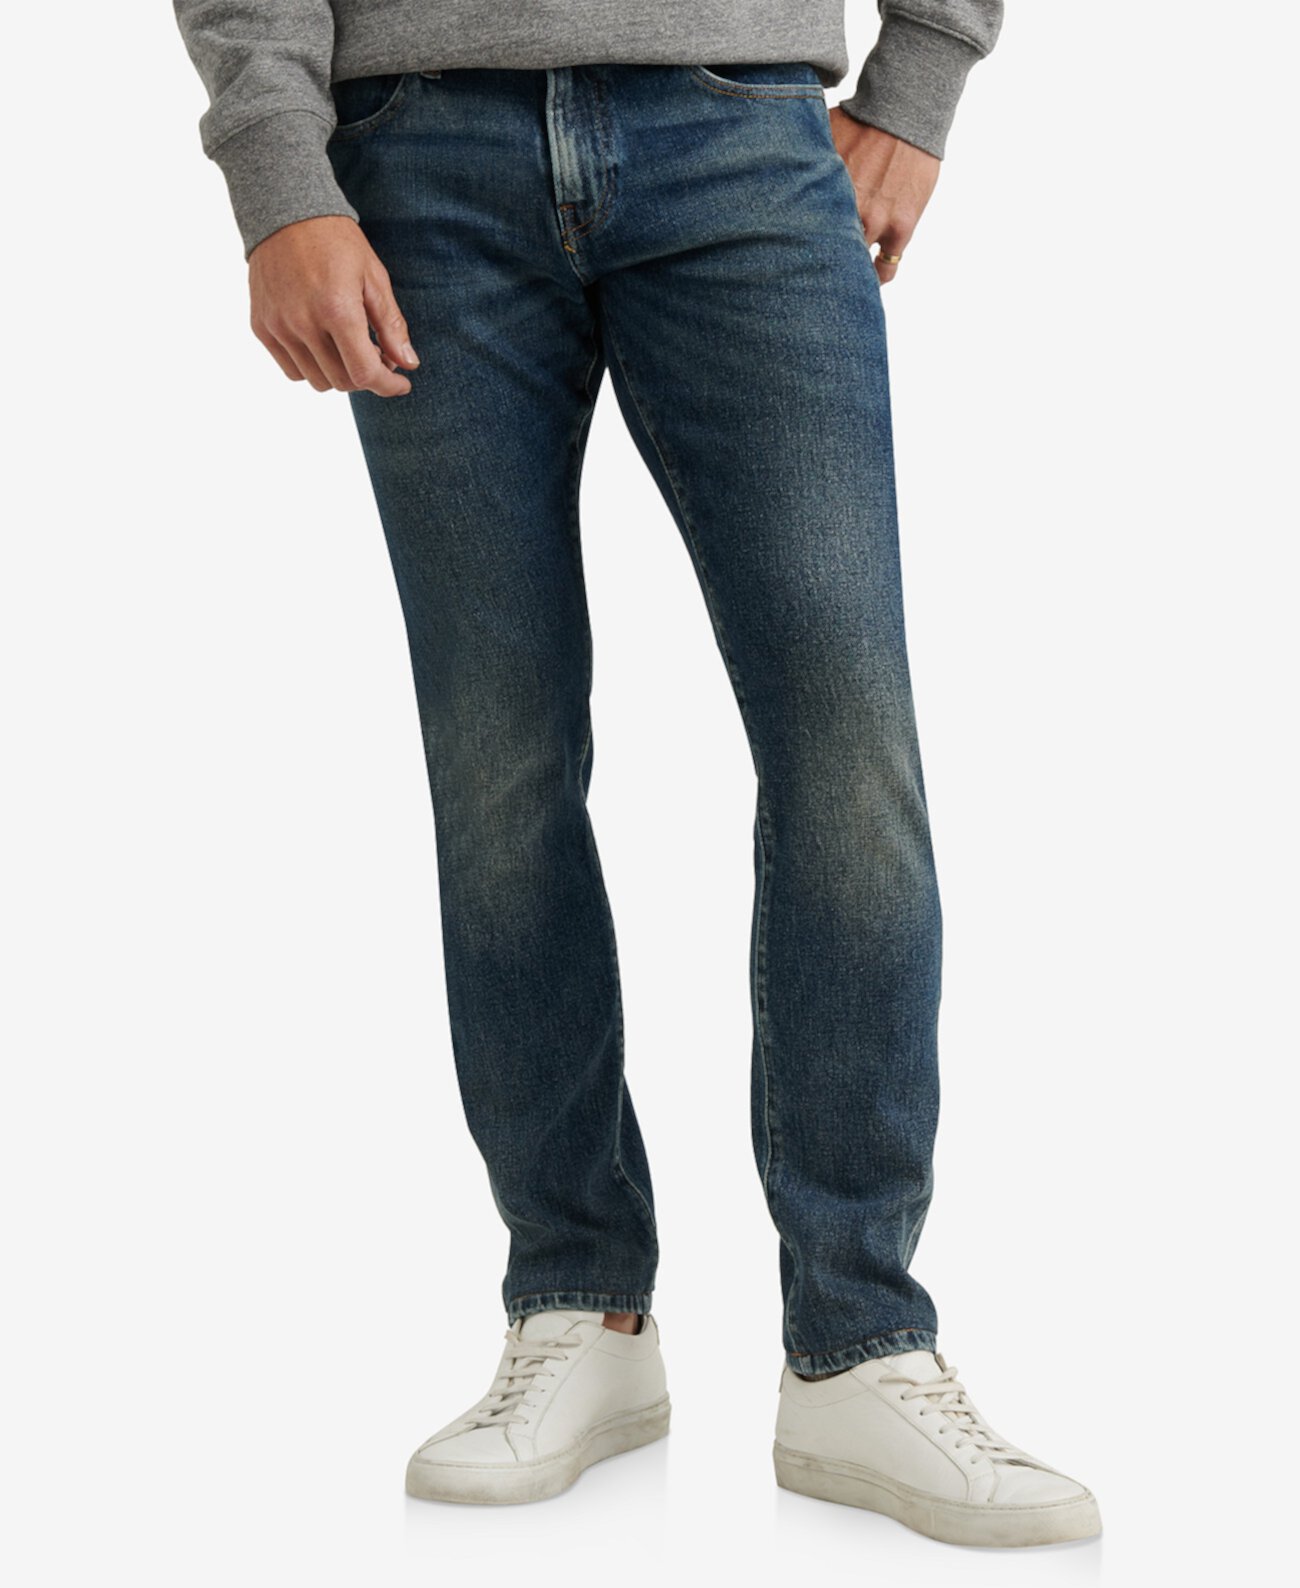 110 узких продвинутых эластичных джинсов для мужчин Lucky Brand